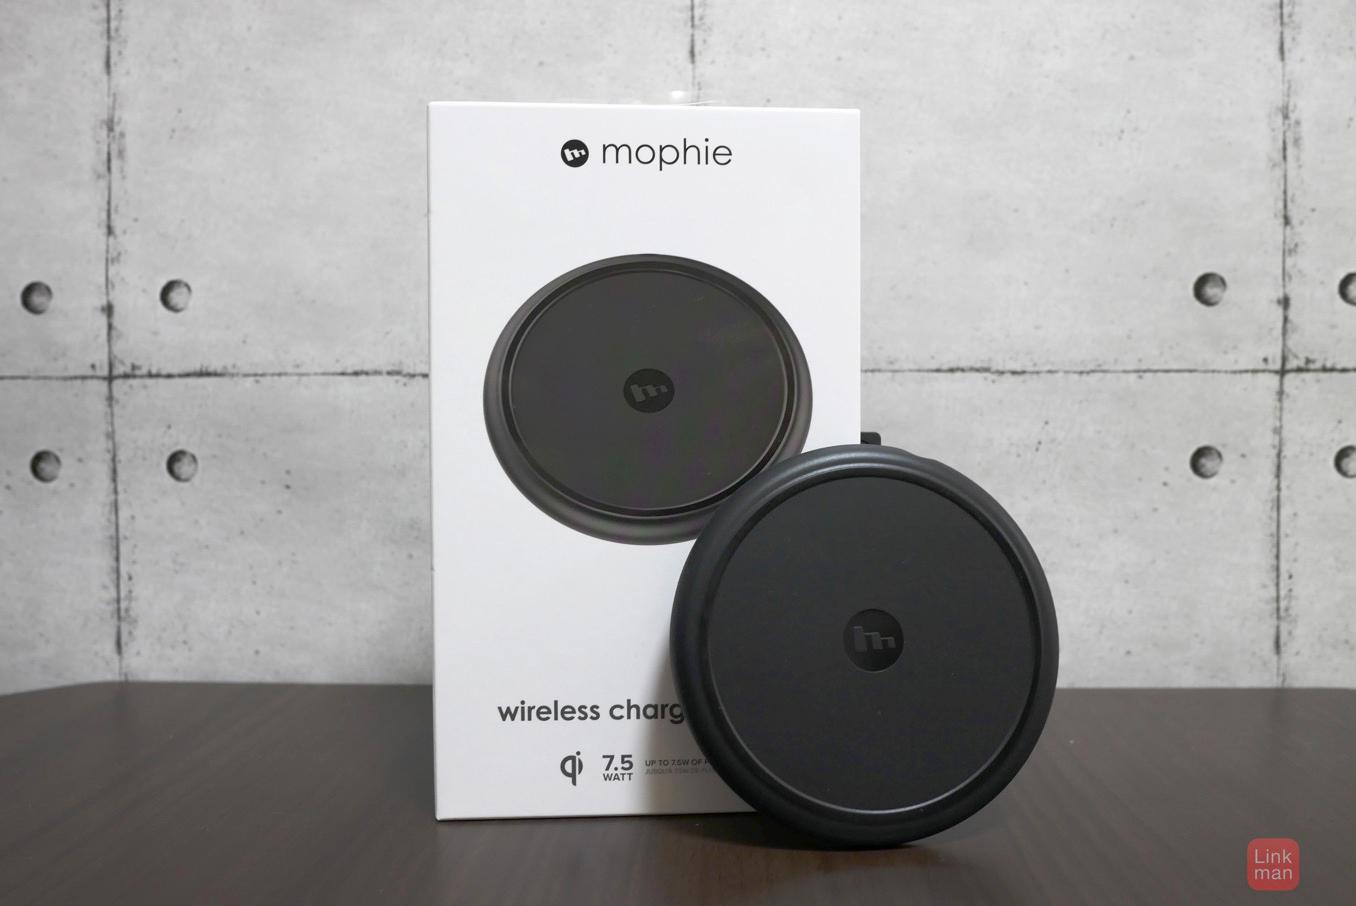 【レビュー】mophie、iPhone X/8/8 Plusの7.5Wワイヤレス充電に対応した「mophie Wireless Charging Pad」をチェック